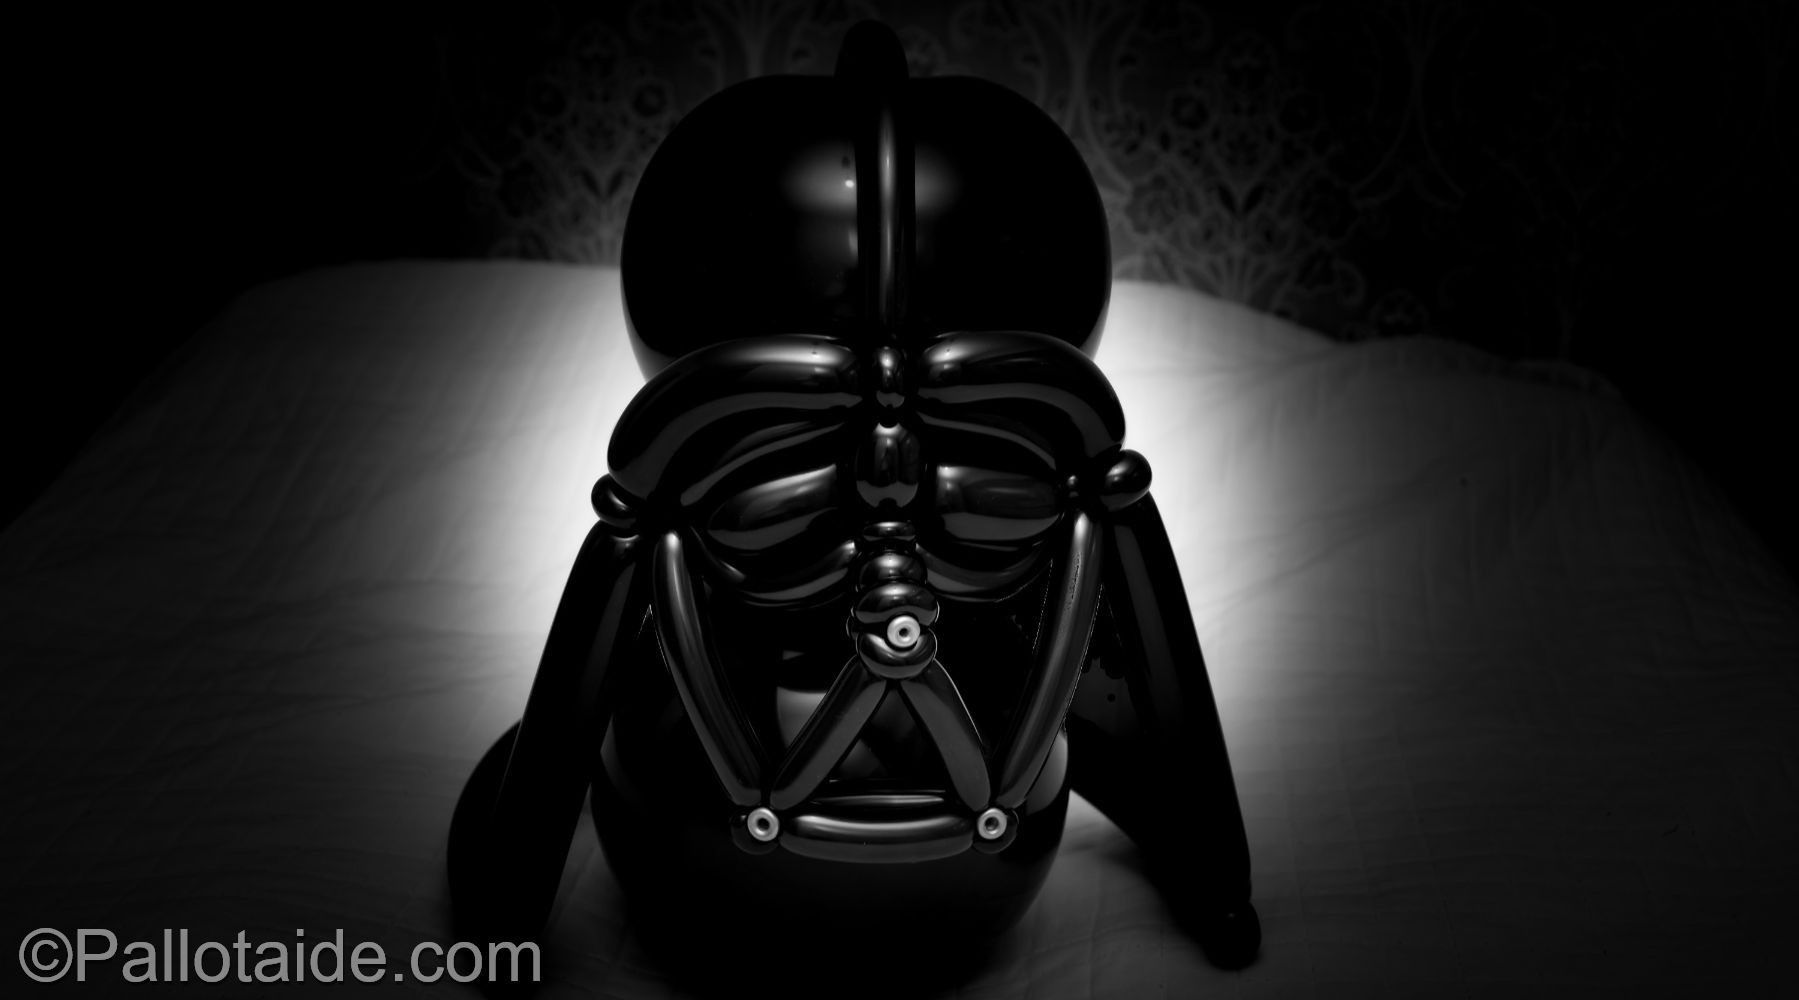 Darth Vader - made using 100% latex balloons by Pallotaide - tehty pelkistä lateksi-ilmapalloista. Pimeyden ruhtinas.